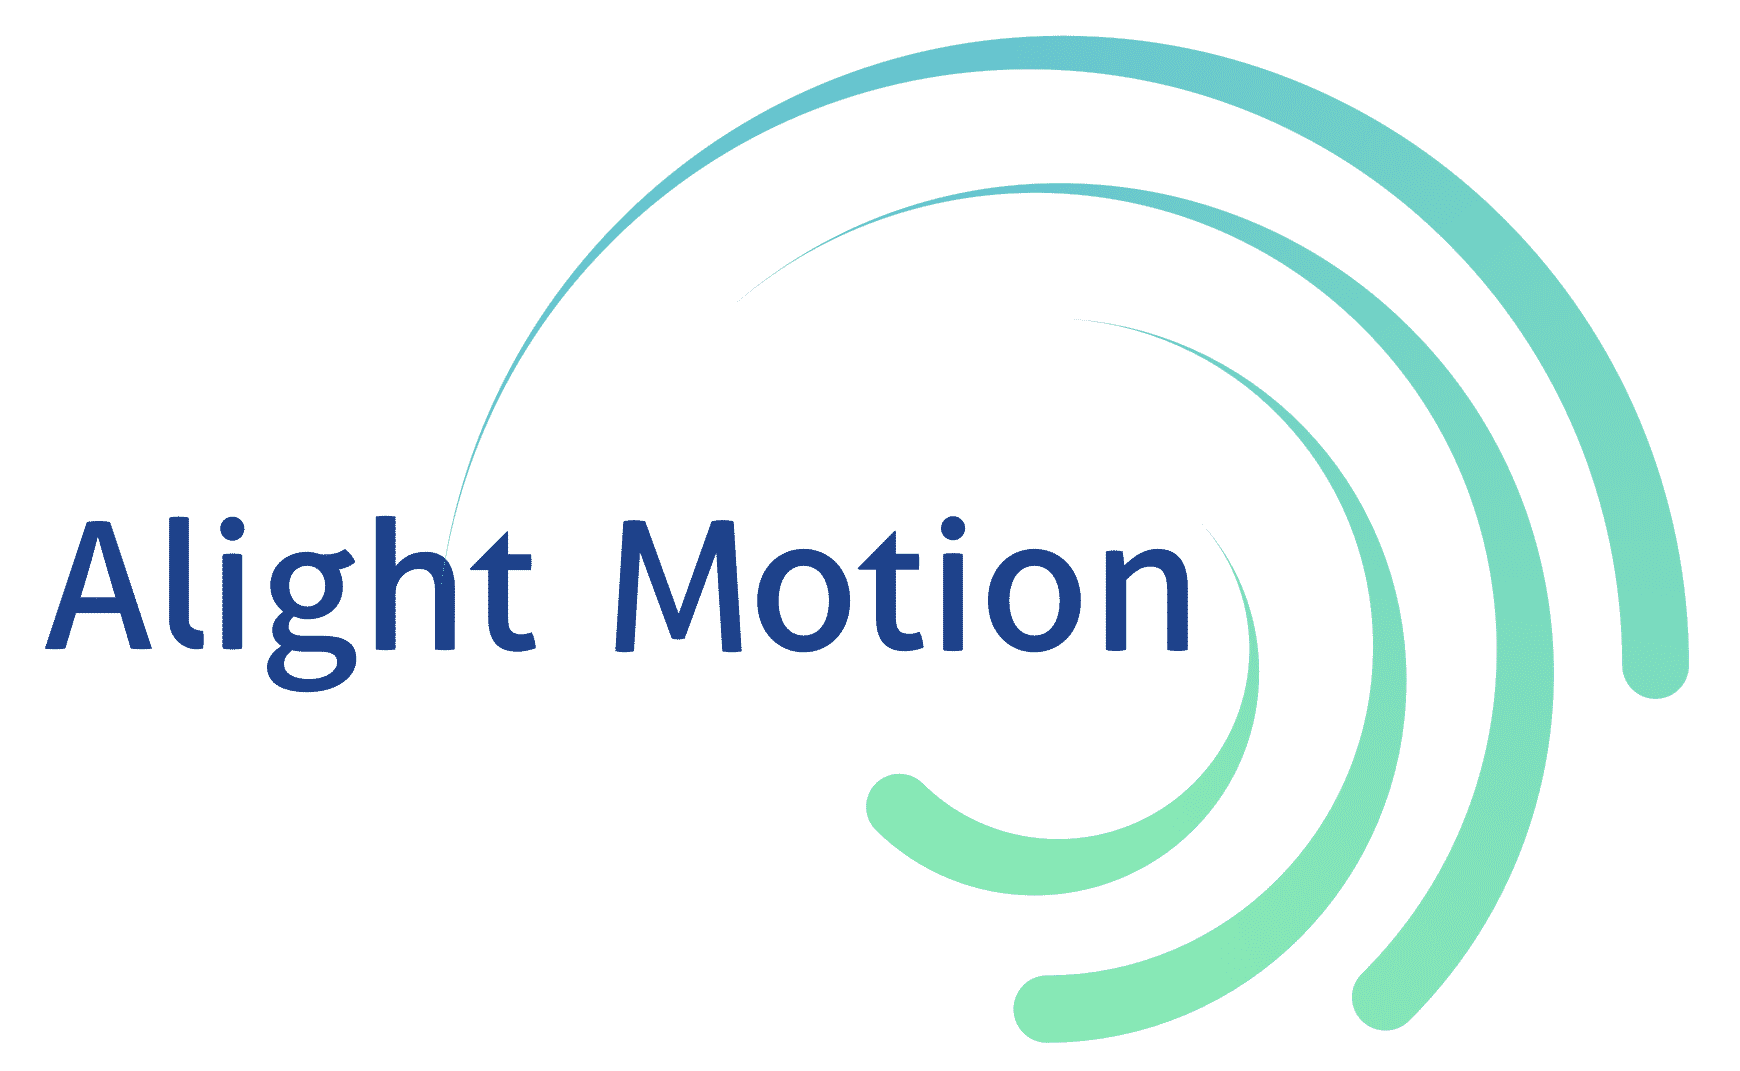 Логотип alight Motion. Алайт моушен. Водяной значок alight Motion. Видеоредактор alight Motion.